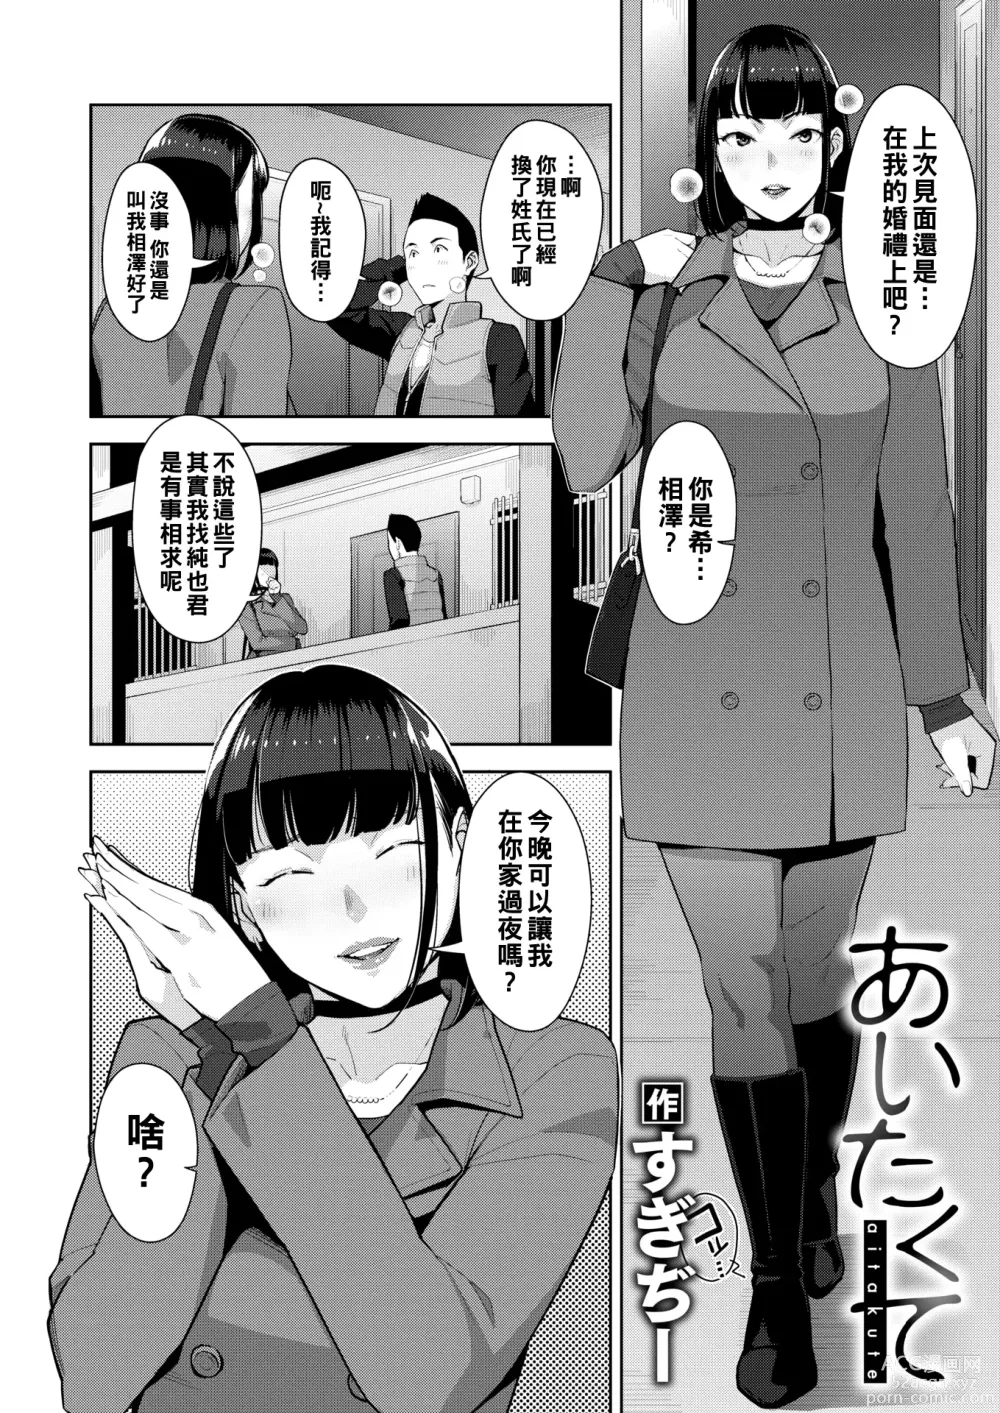 Page 2 of manga aitakute